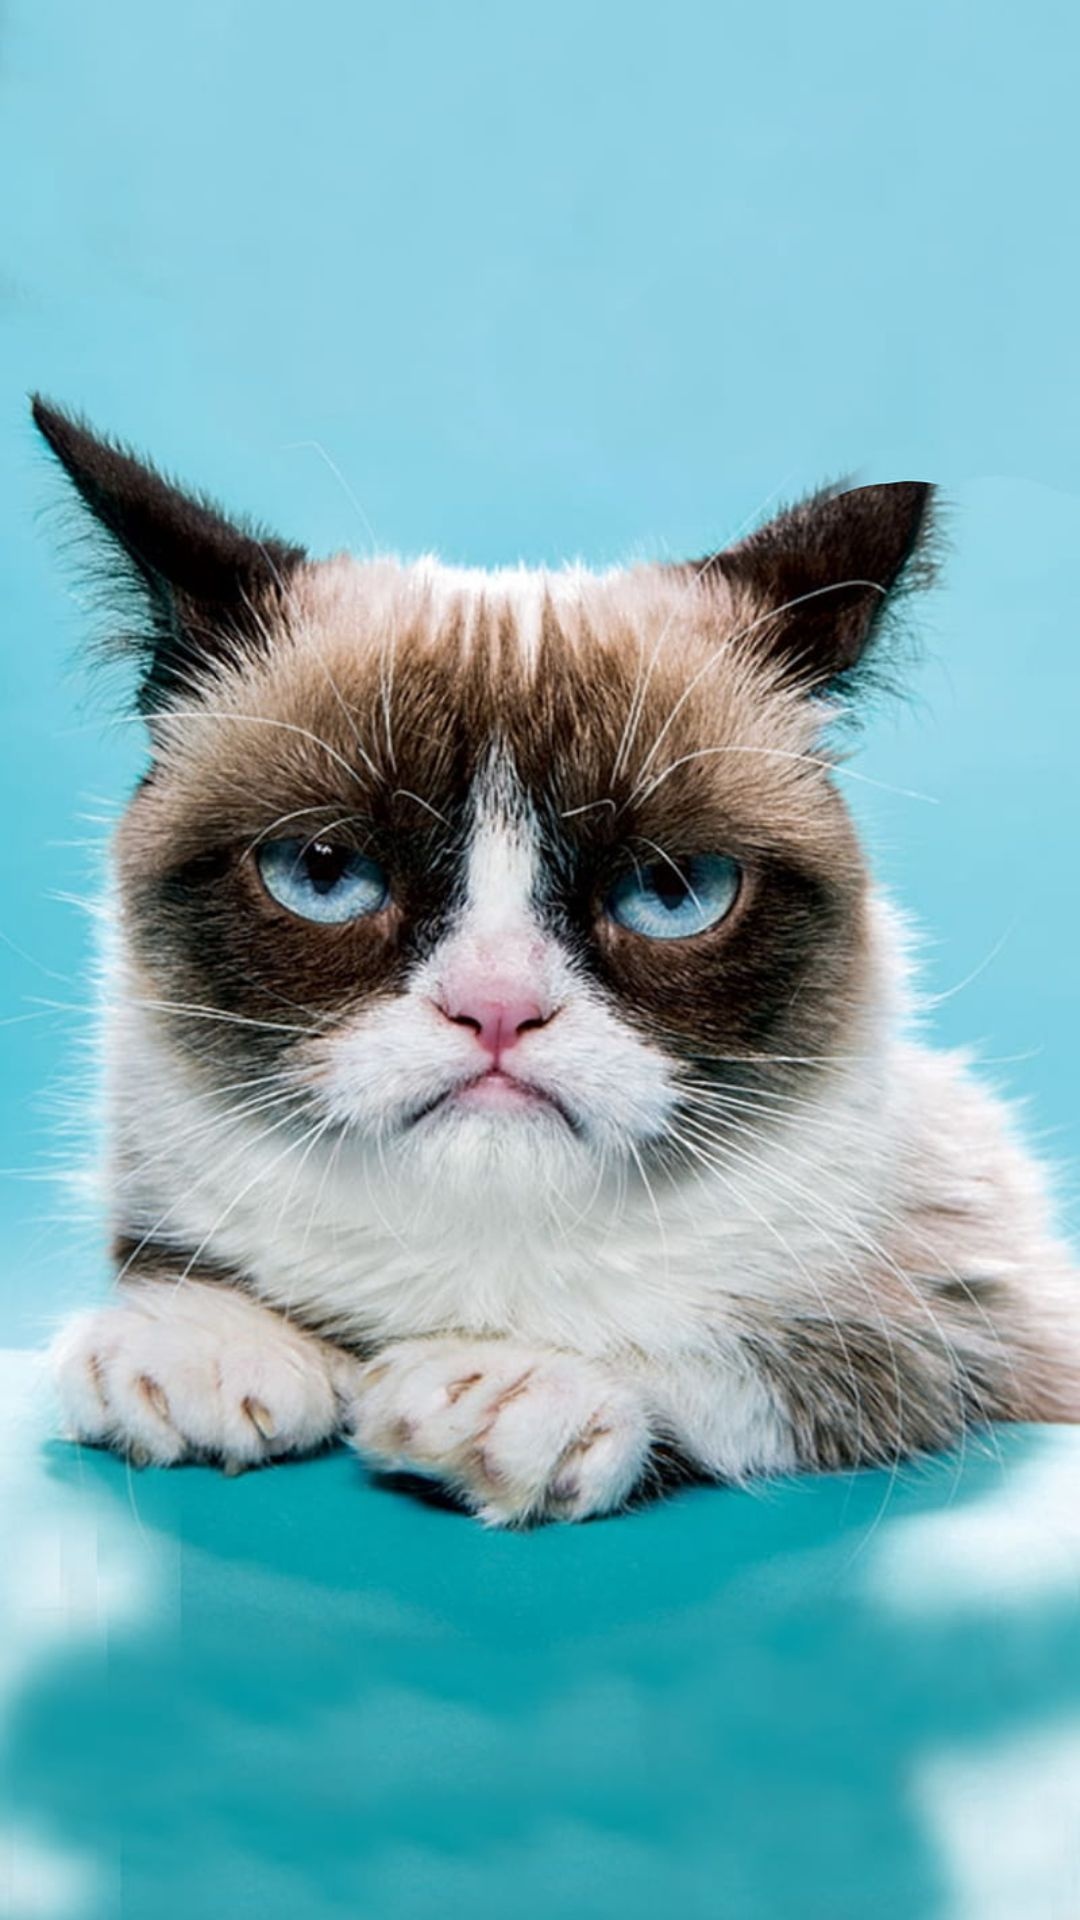 Grumpy Cat, Top 25 wallpapers, HQ download, Meme sensation, 1080x1920 Full HD Phone